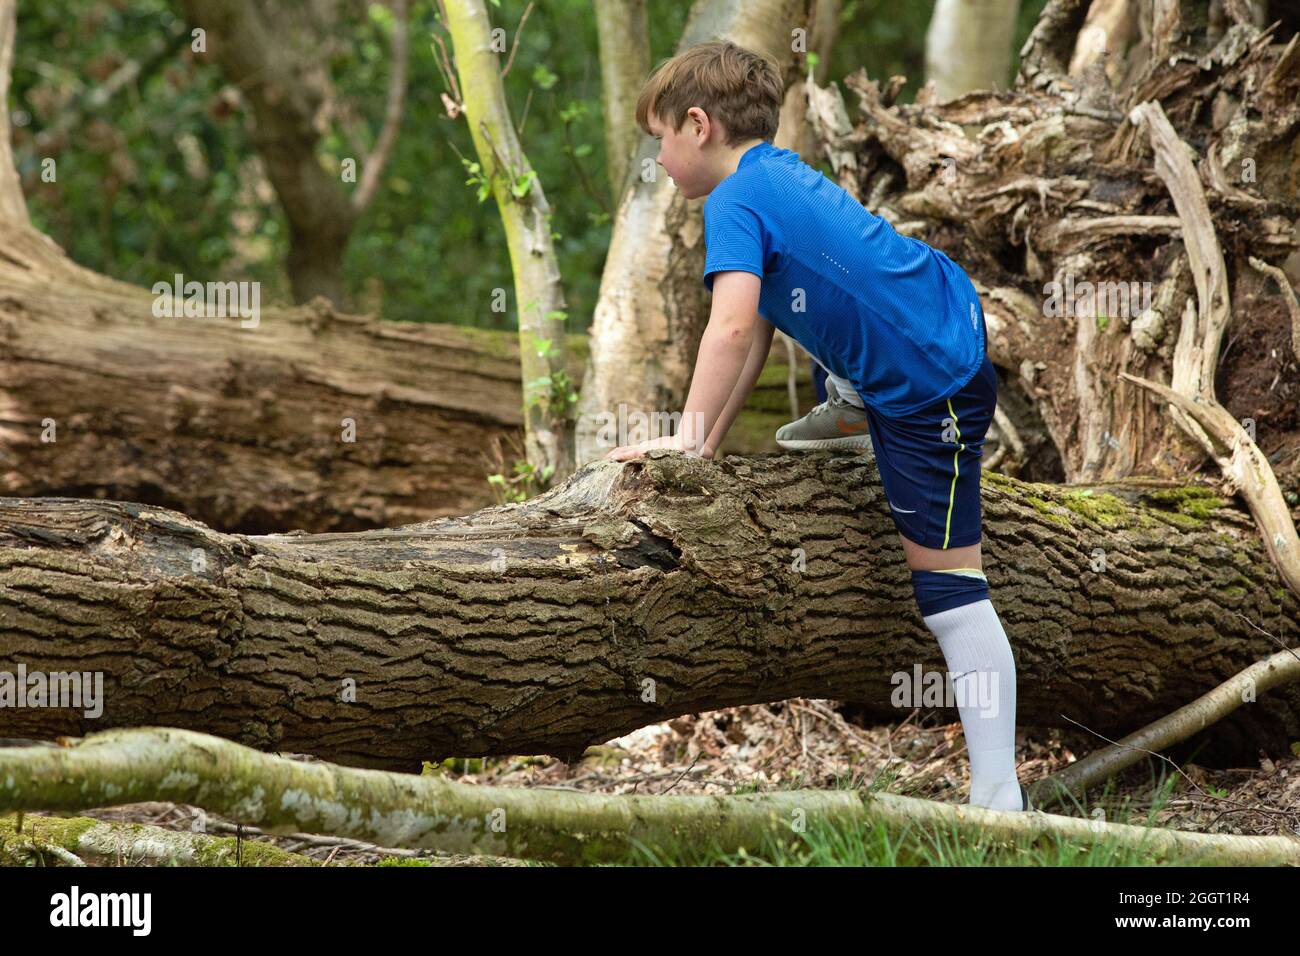 Jeune garçon découvrant le défi et l'expérience de grimper sur les natures obstacles naturels, sous la forme d'un tronc d'arbre mort tombé dans la forêt. Banque D'Images